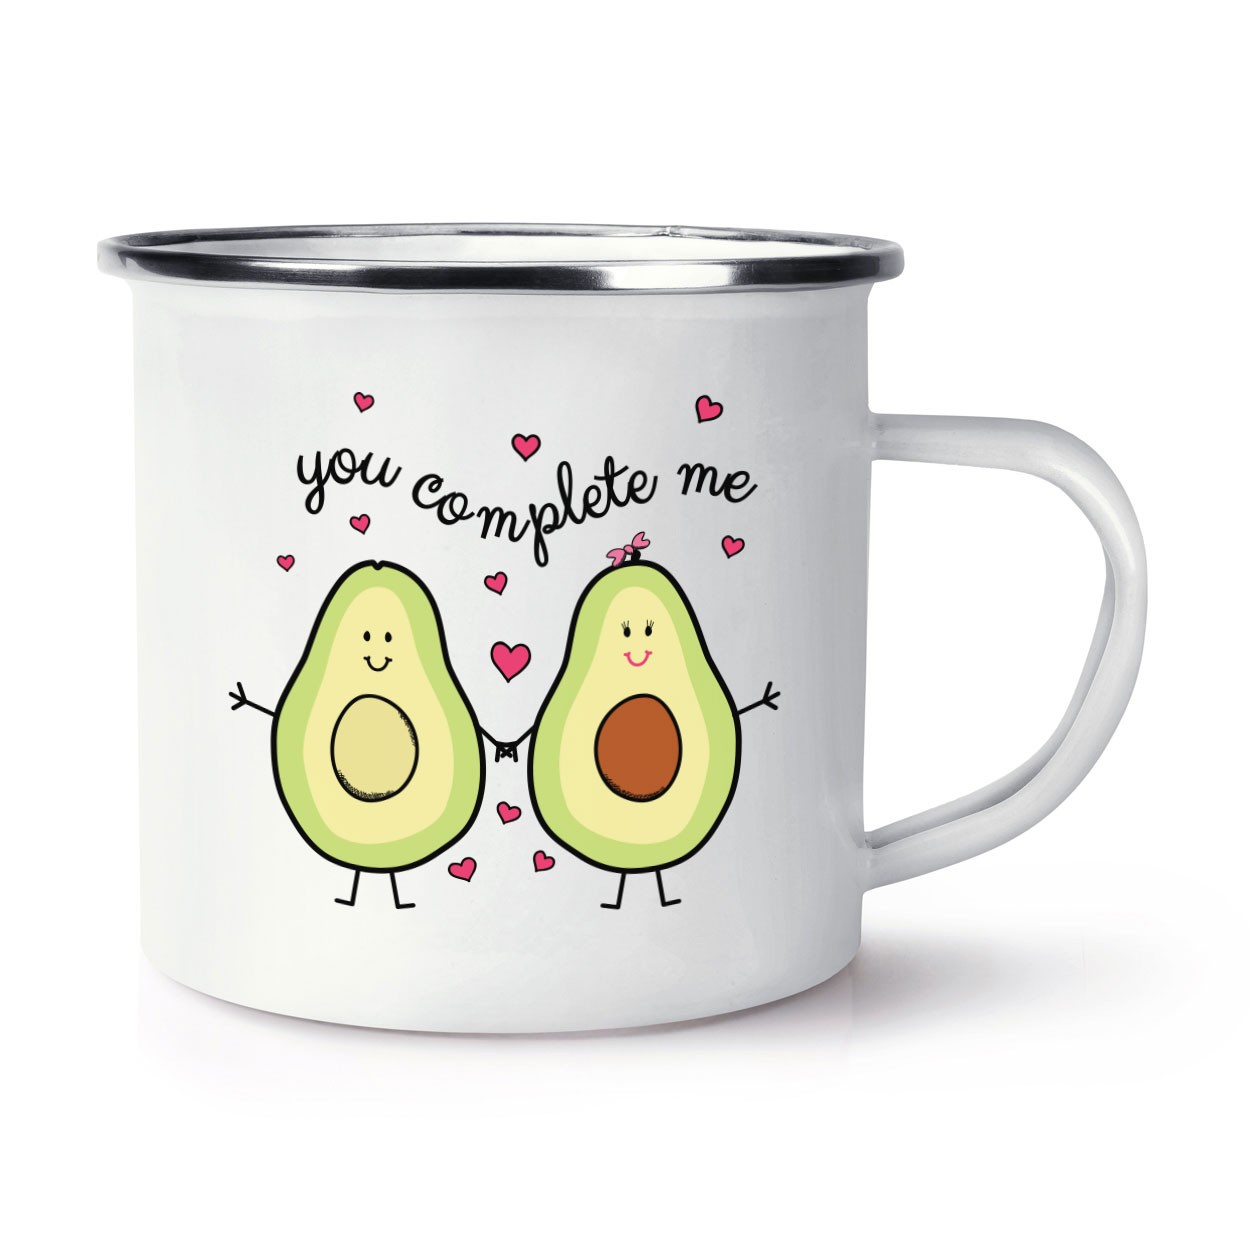 Avocado You Complete Me Retro Enamel Mug Cup